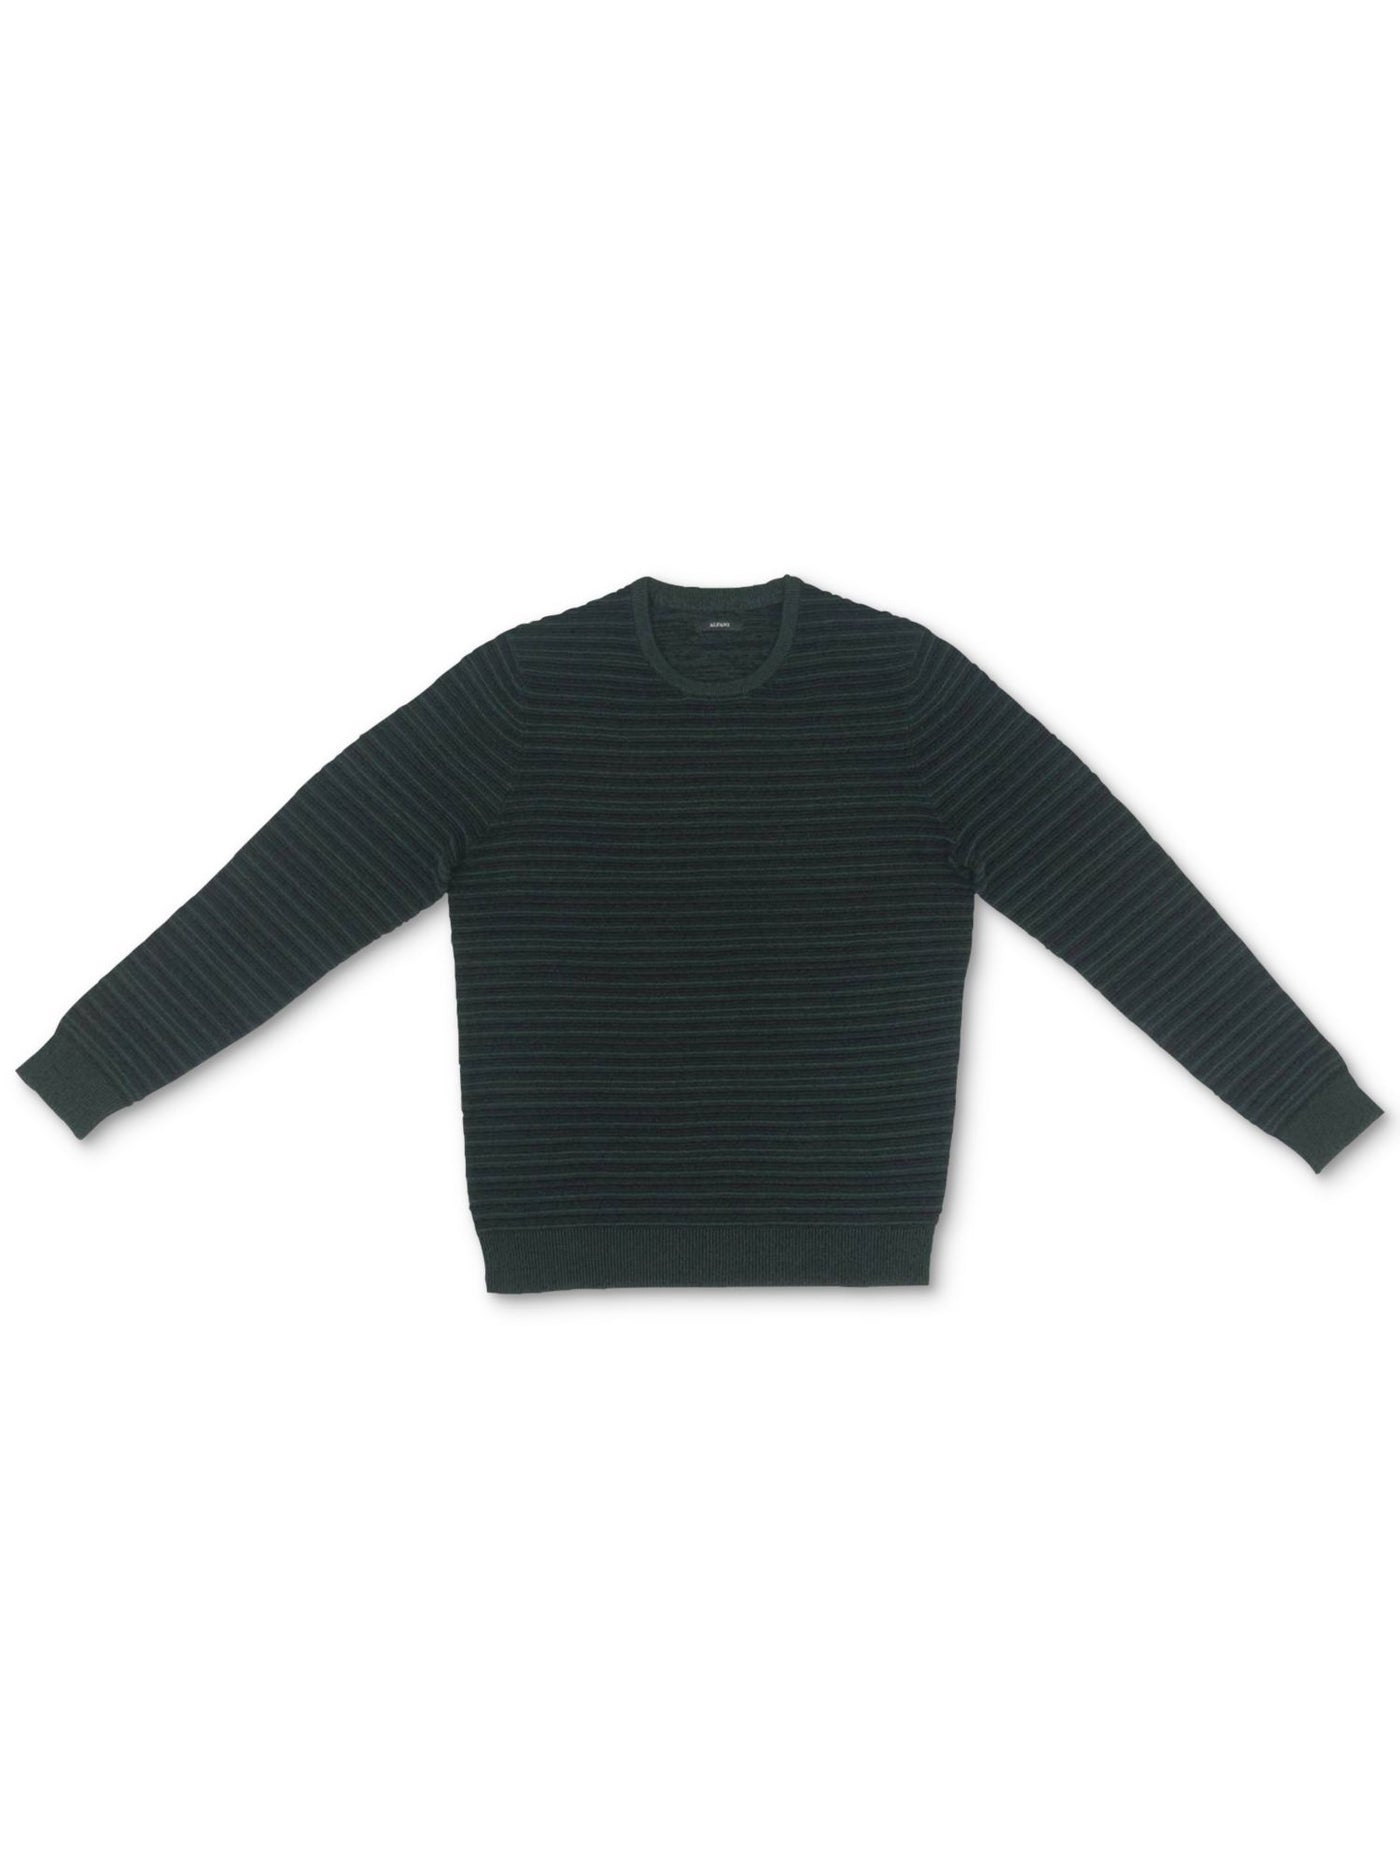 ALFANI Mens Green Striped Crew Neck Classic Fit Cotton Pullover Sweater XL